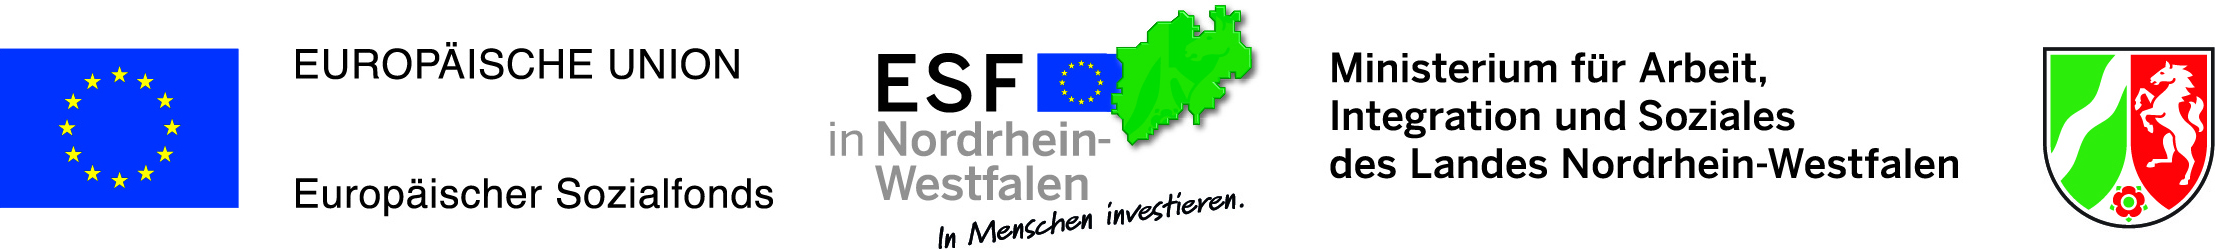 Europäische Union/Europäischer Sozialfonds/NRW